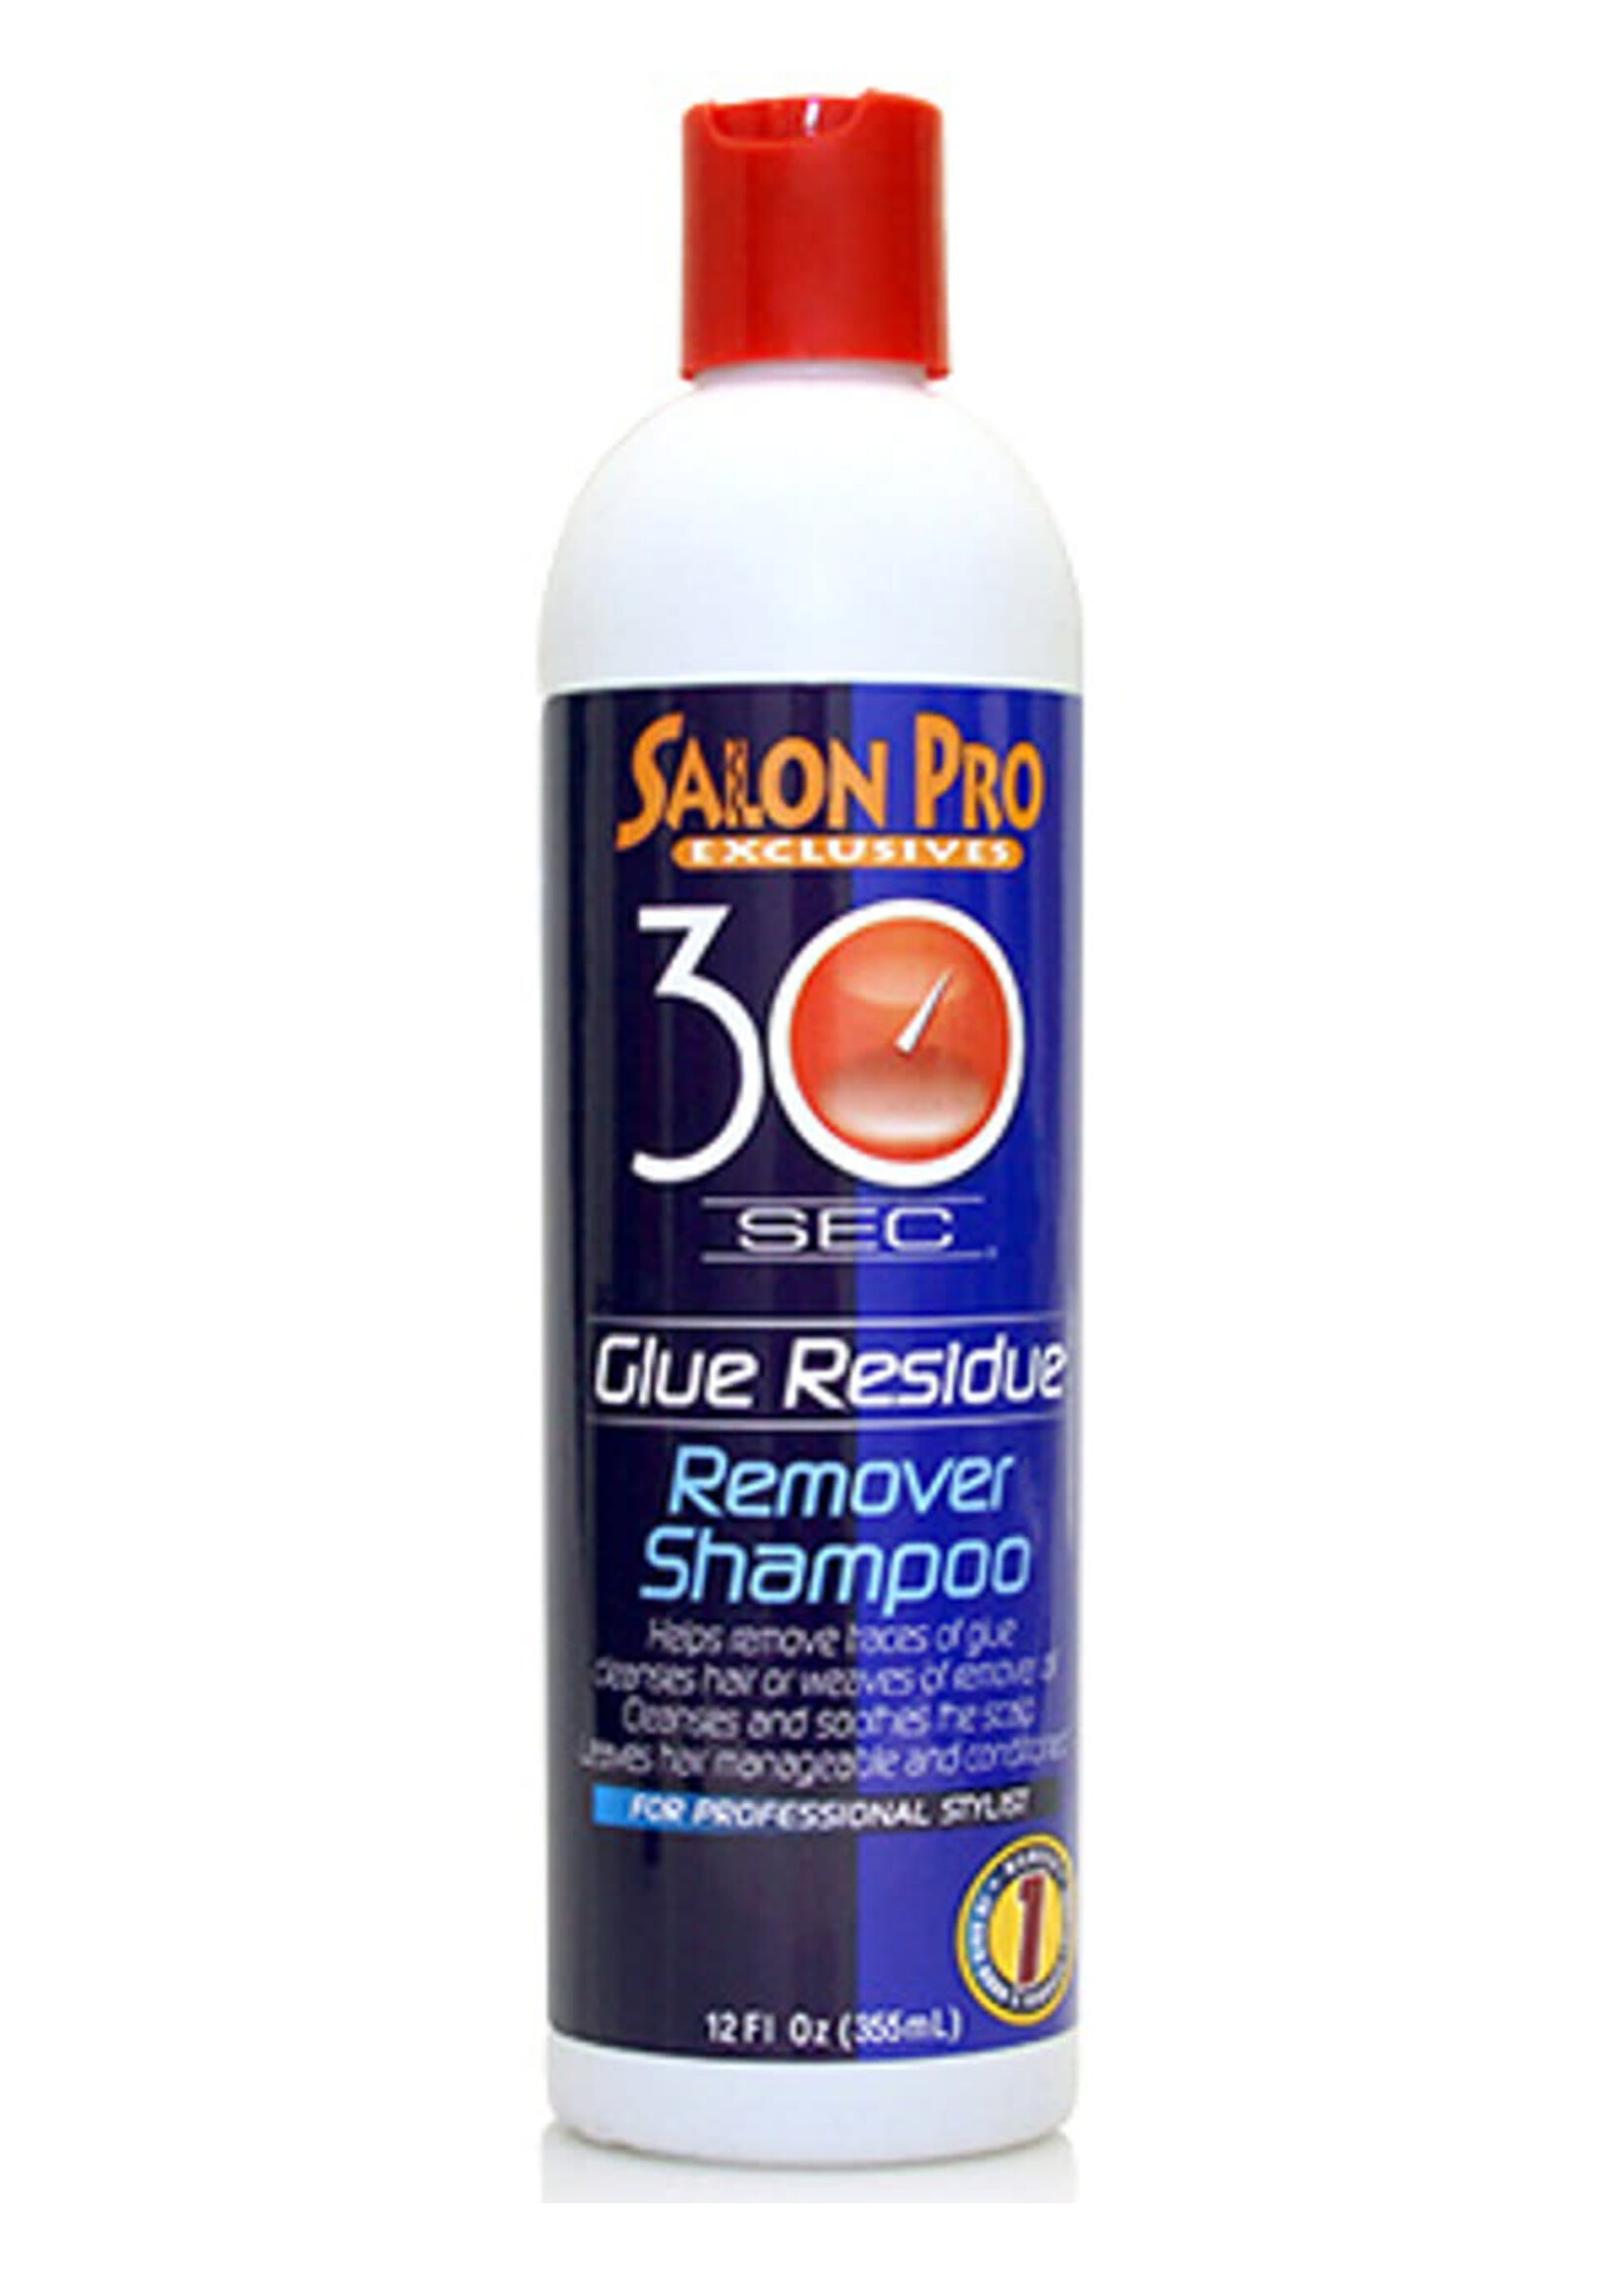 30 Sec Salon Pro Bond Remover Shampoo